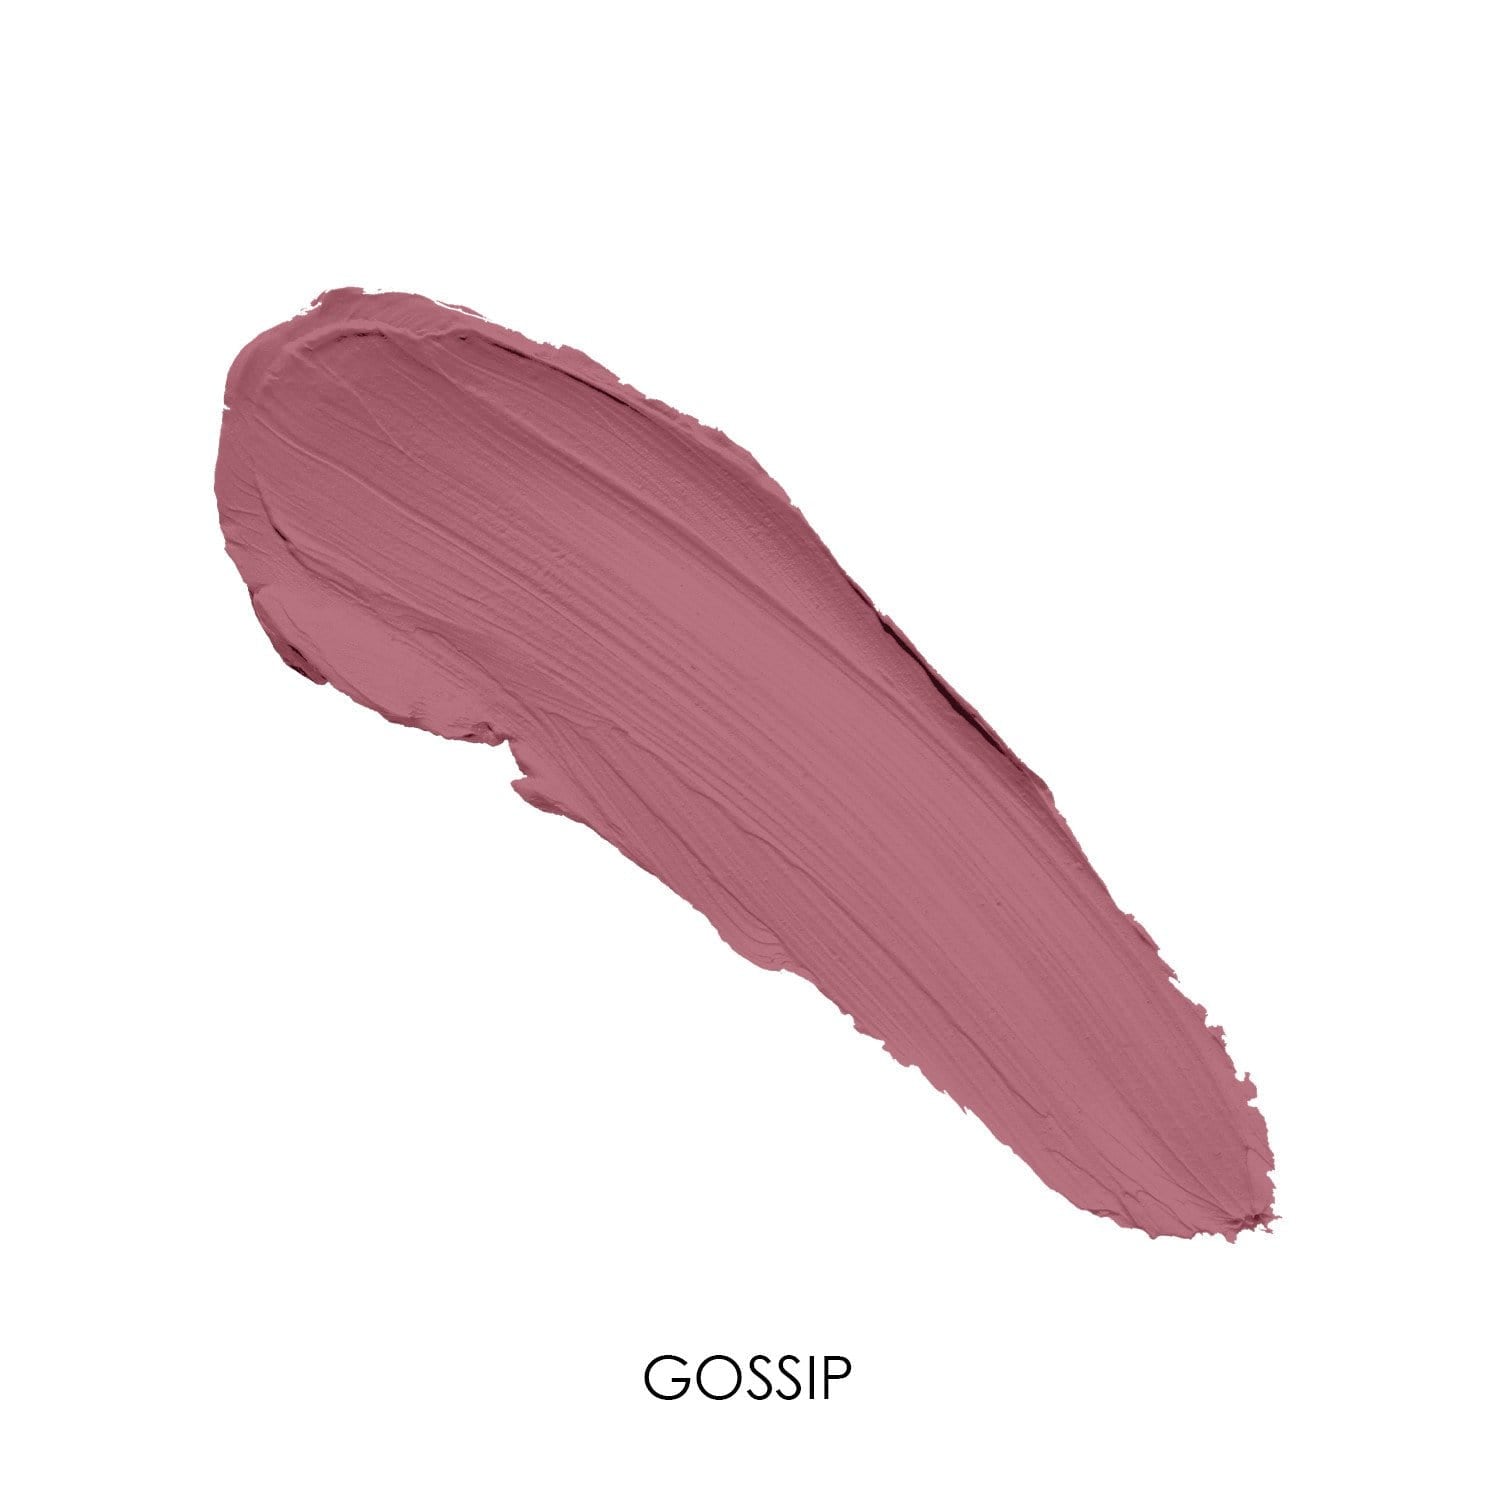 Gossip - Lavender Taupe